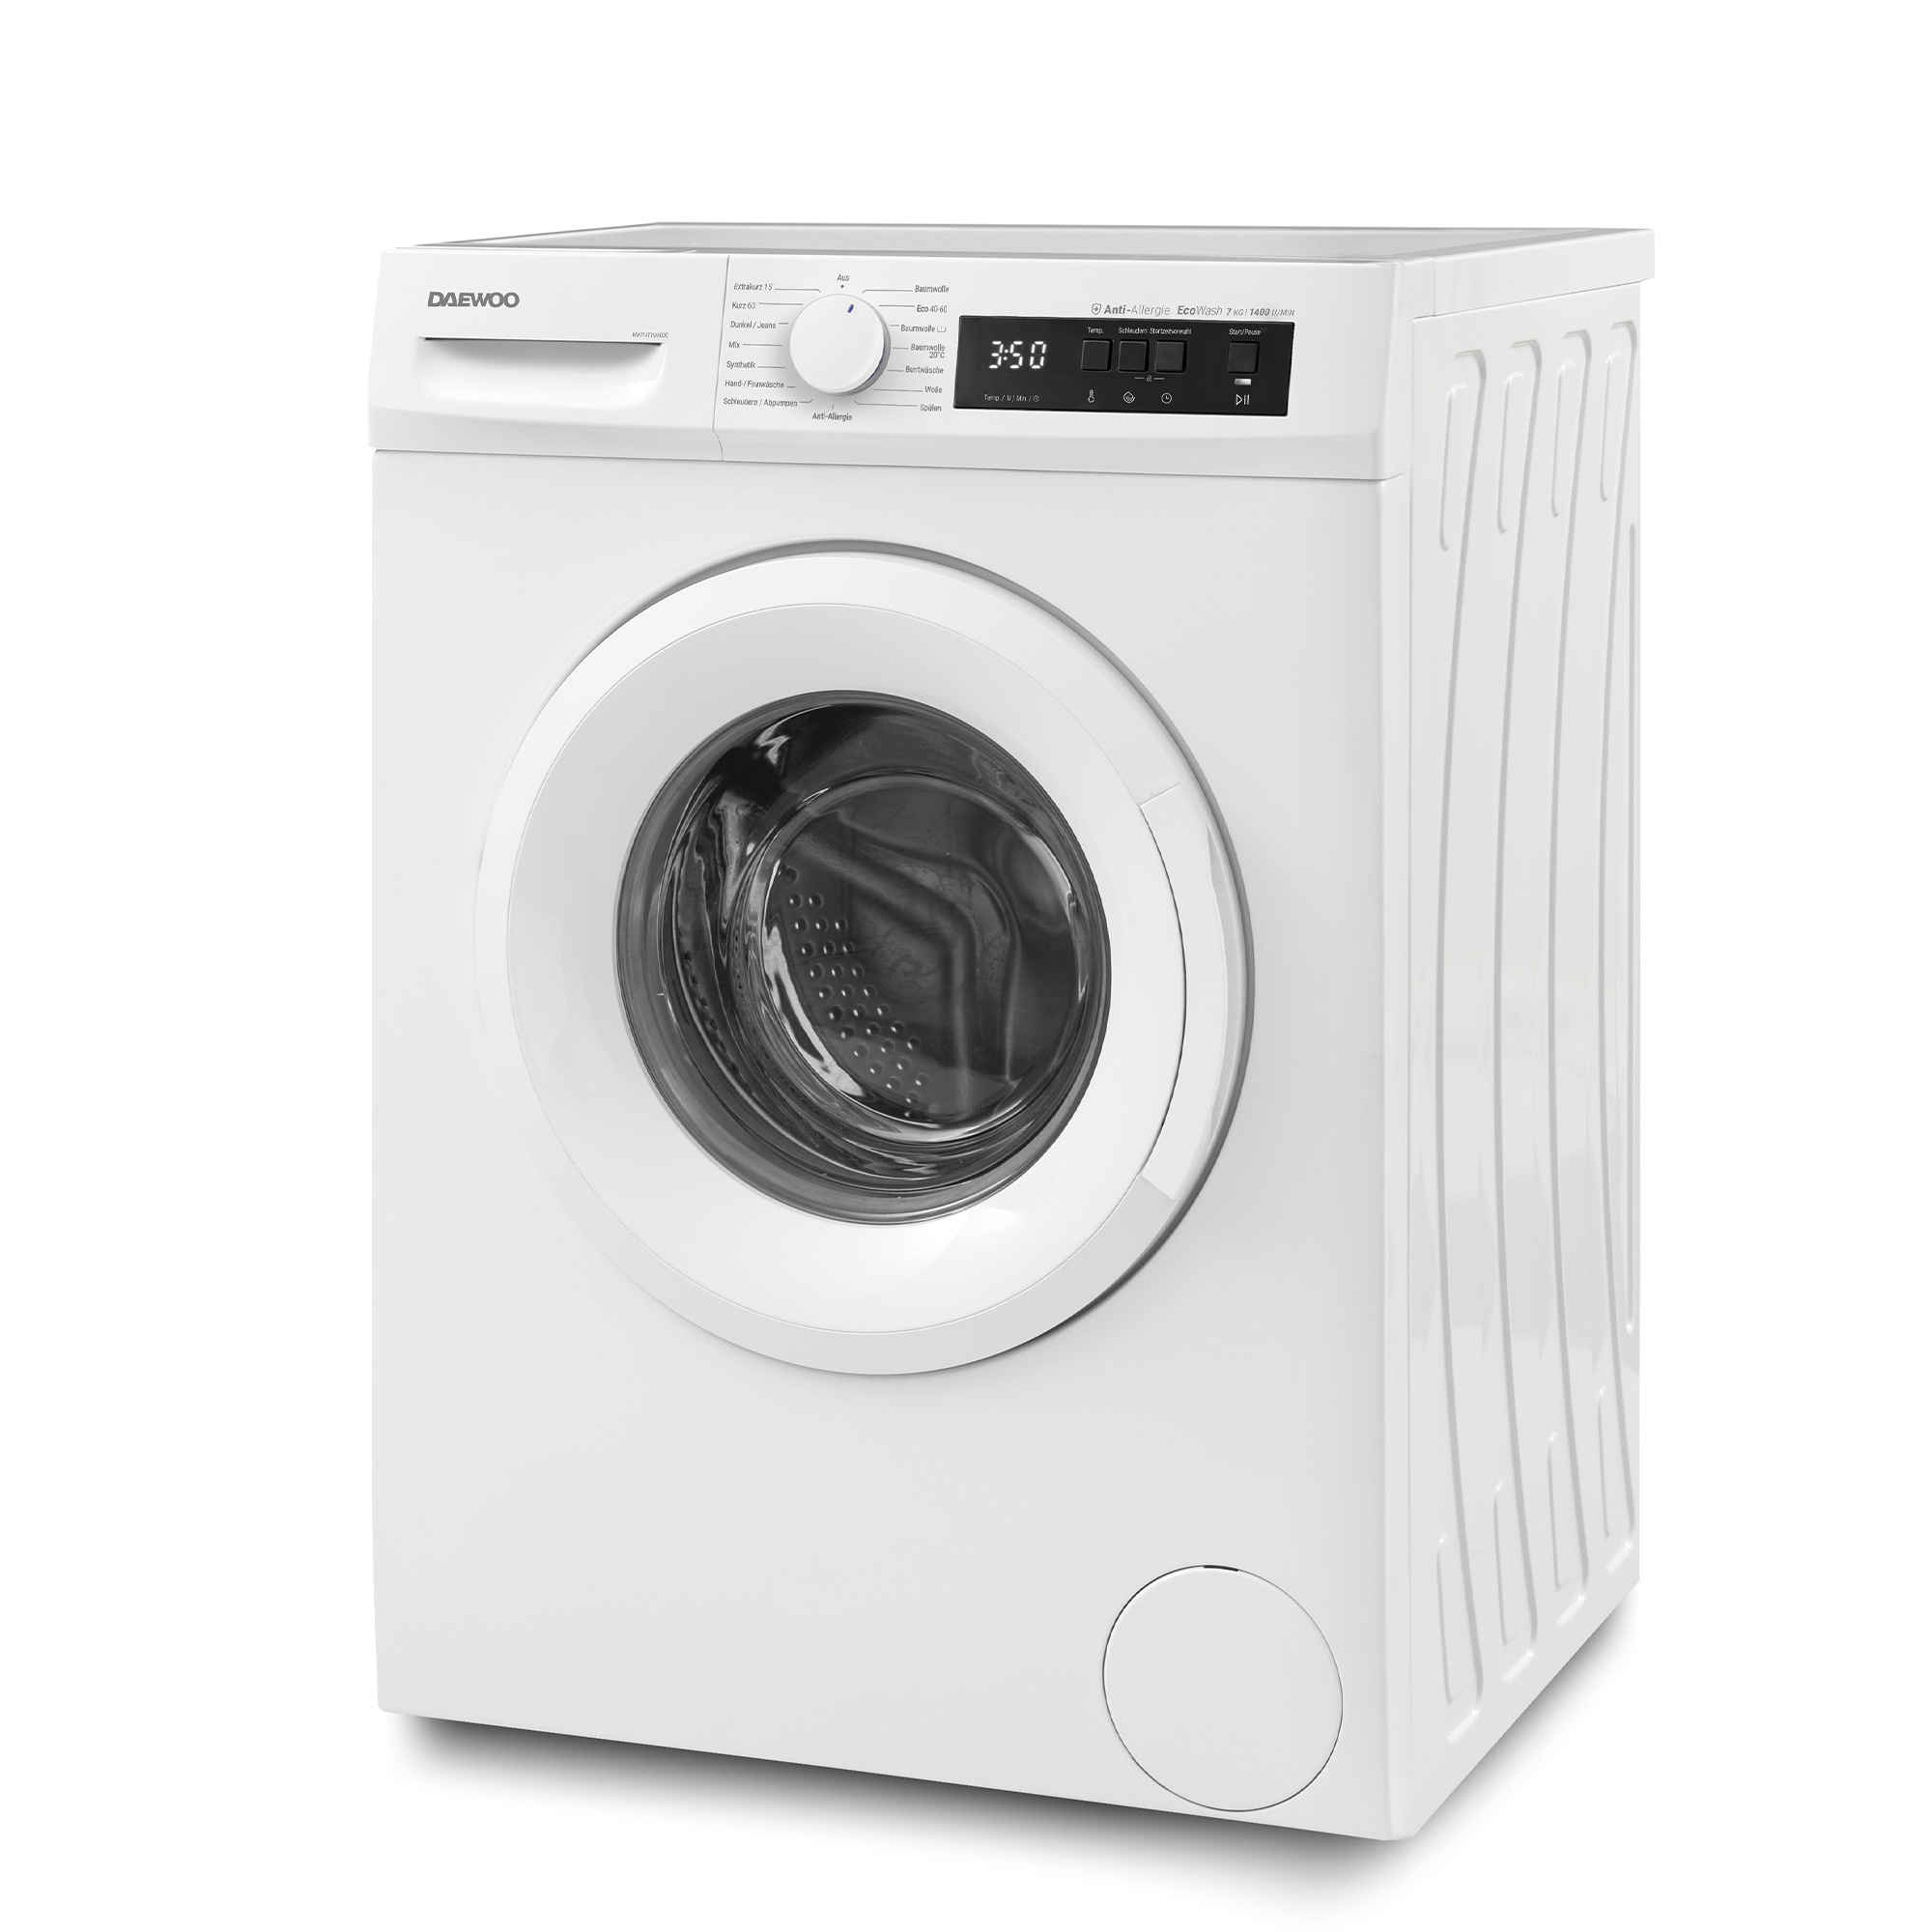 A) (7 WM714T1WA0DE Waschmaschine DAEWOO kg,